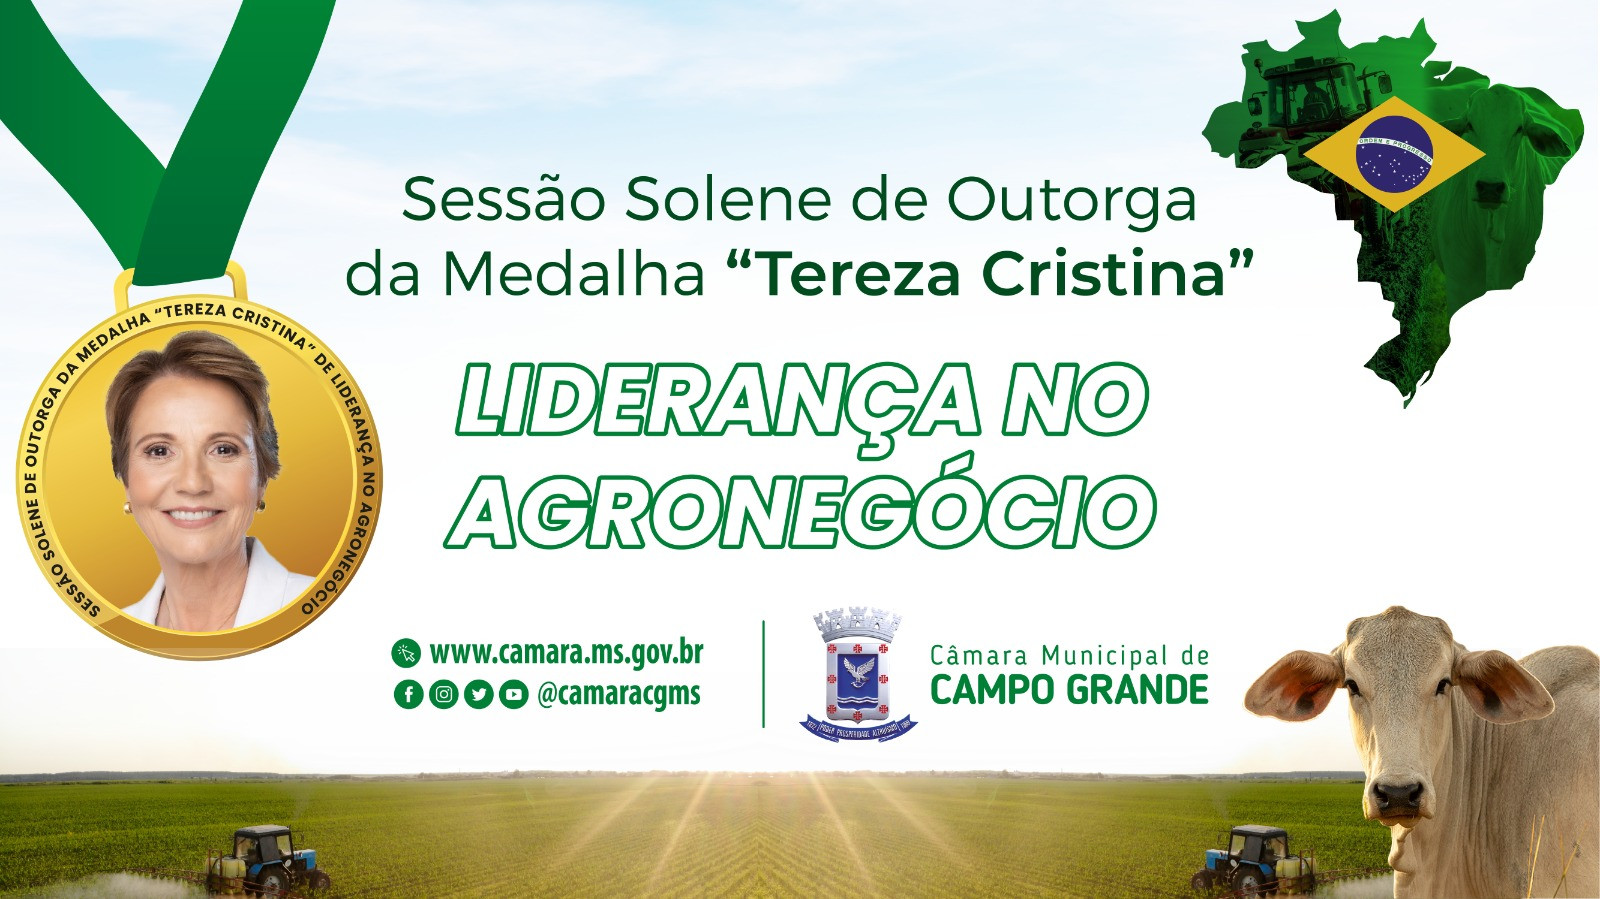 Sessão solene outorga a Medalha “Tereza Cristina” de Liderança no Agronegócio nesta sexta-feira em Campo Grande